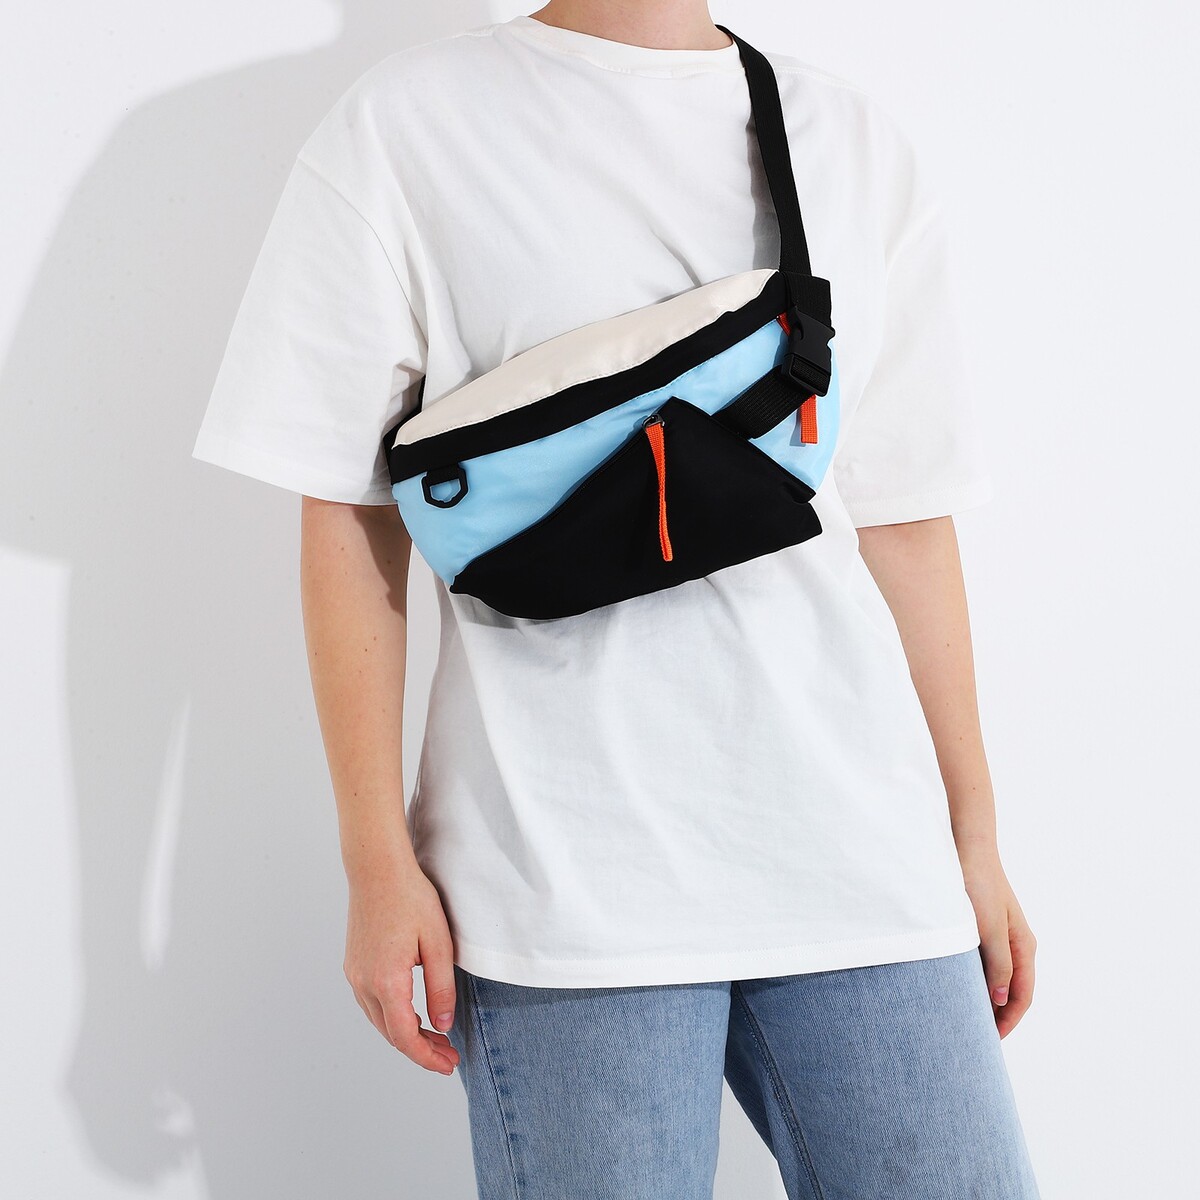 Сумка на одно плечо на молнии, 2 наружных кармана, цвет голубой/черный сумка на одно плечо на молнии 2 наружных кармана